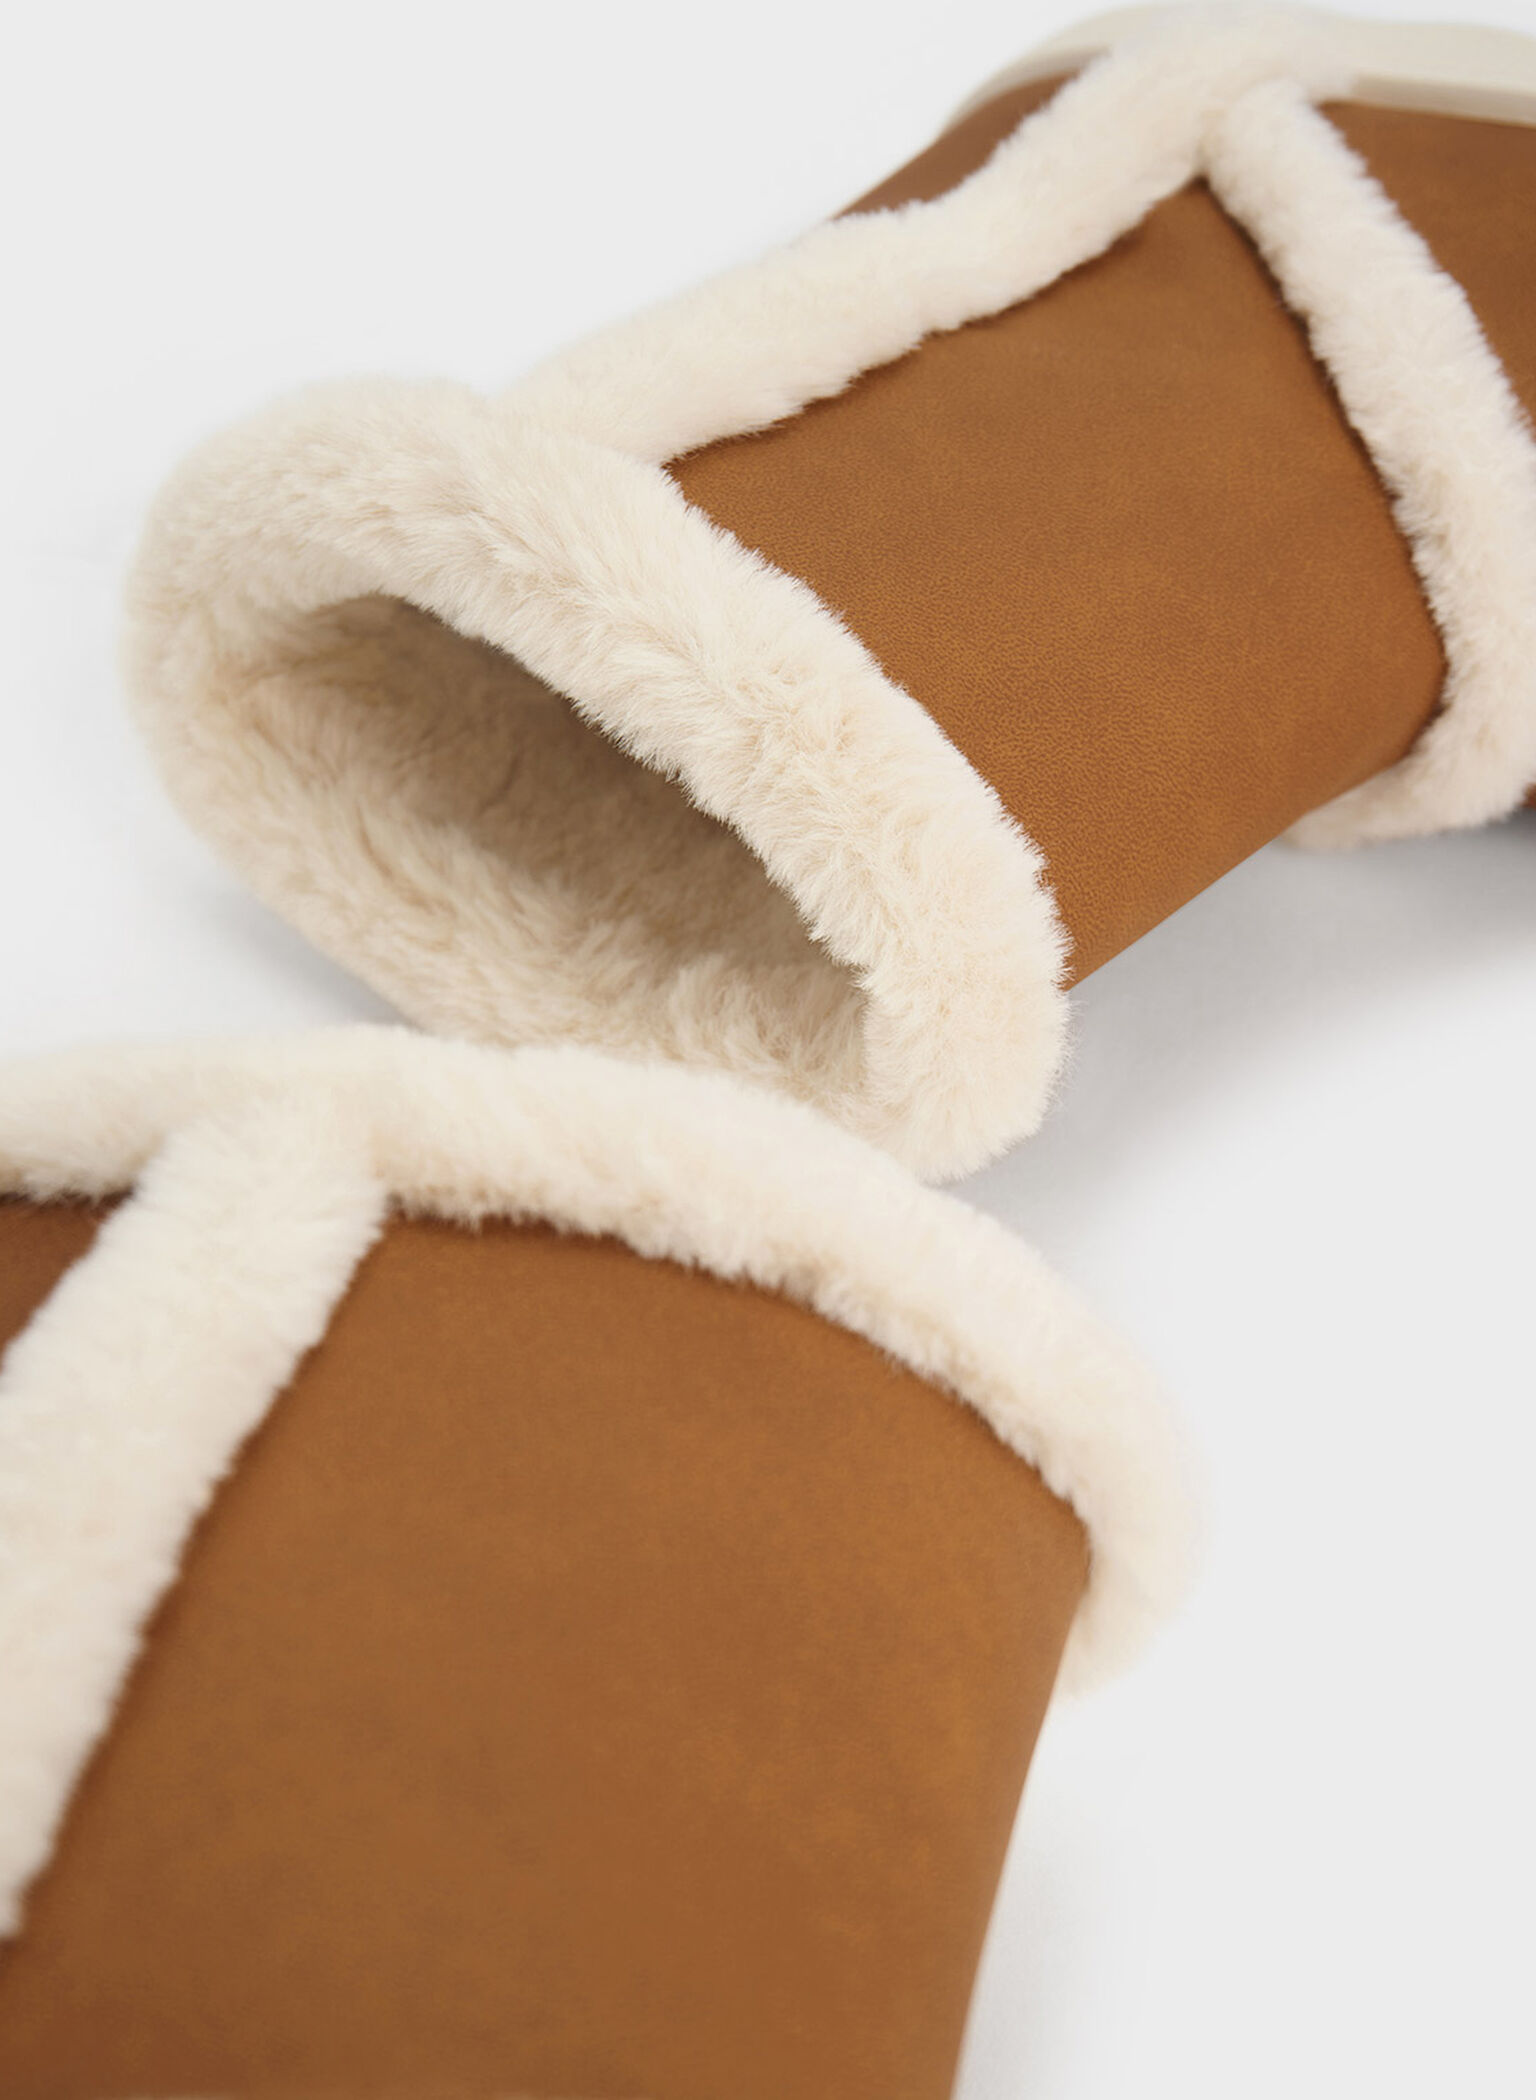 Girls' Fur-Trim Textured Ankle Boots, Camel, hi-res